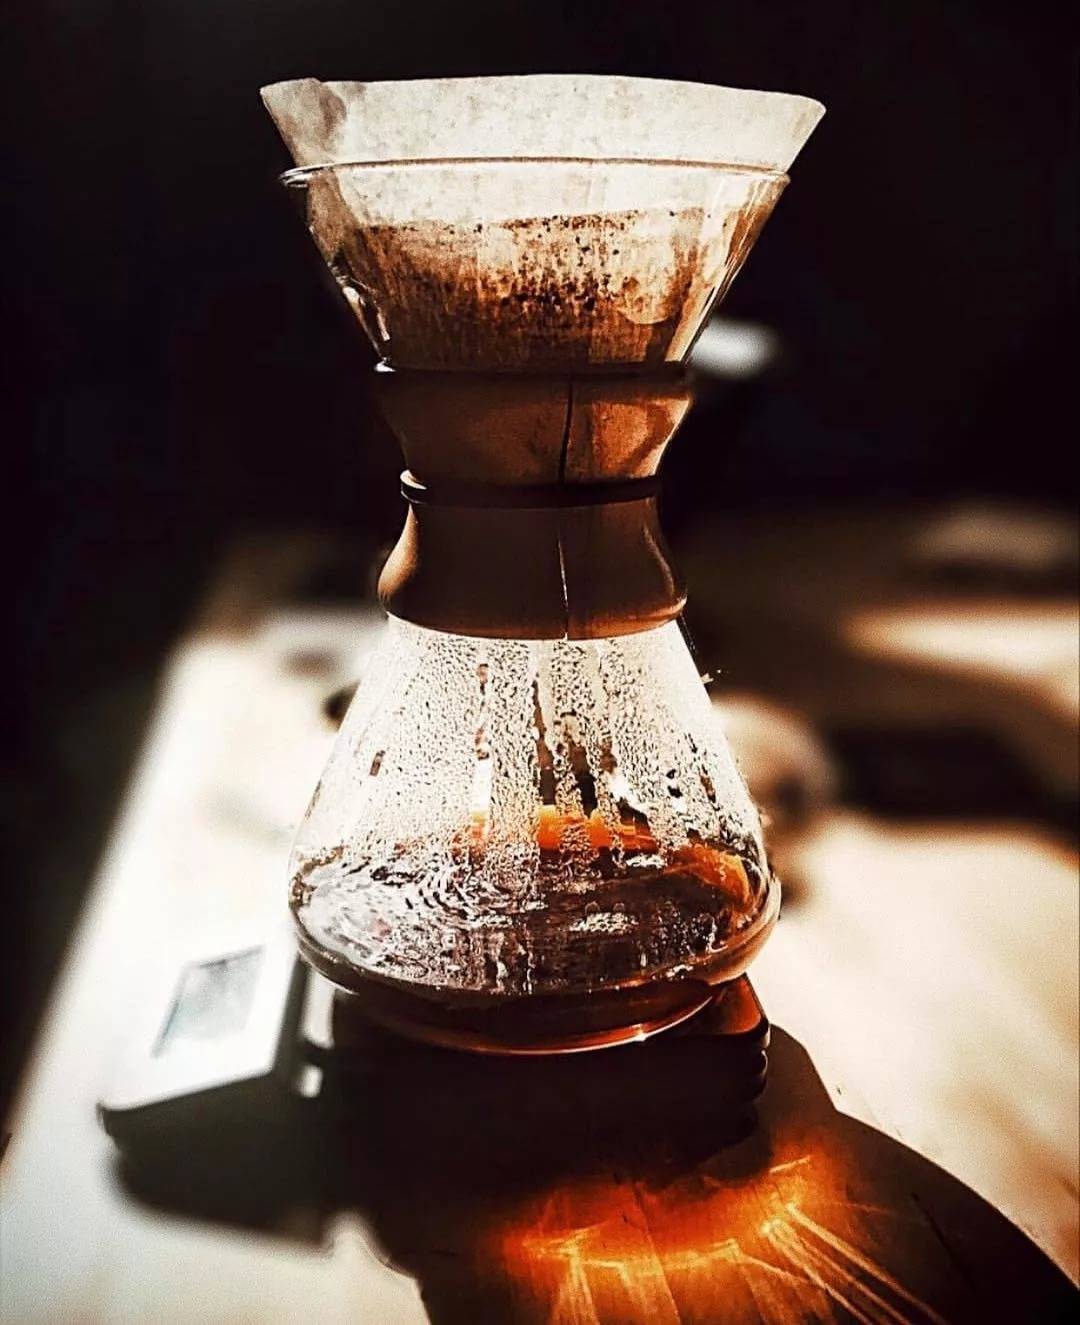 Кемекс (chemex) для кофе - что это такое. как заварить кофе в кемексе